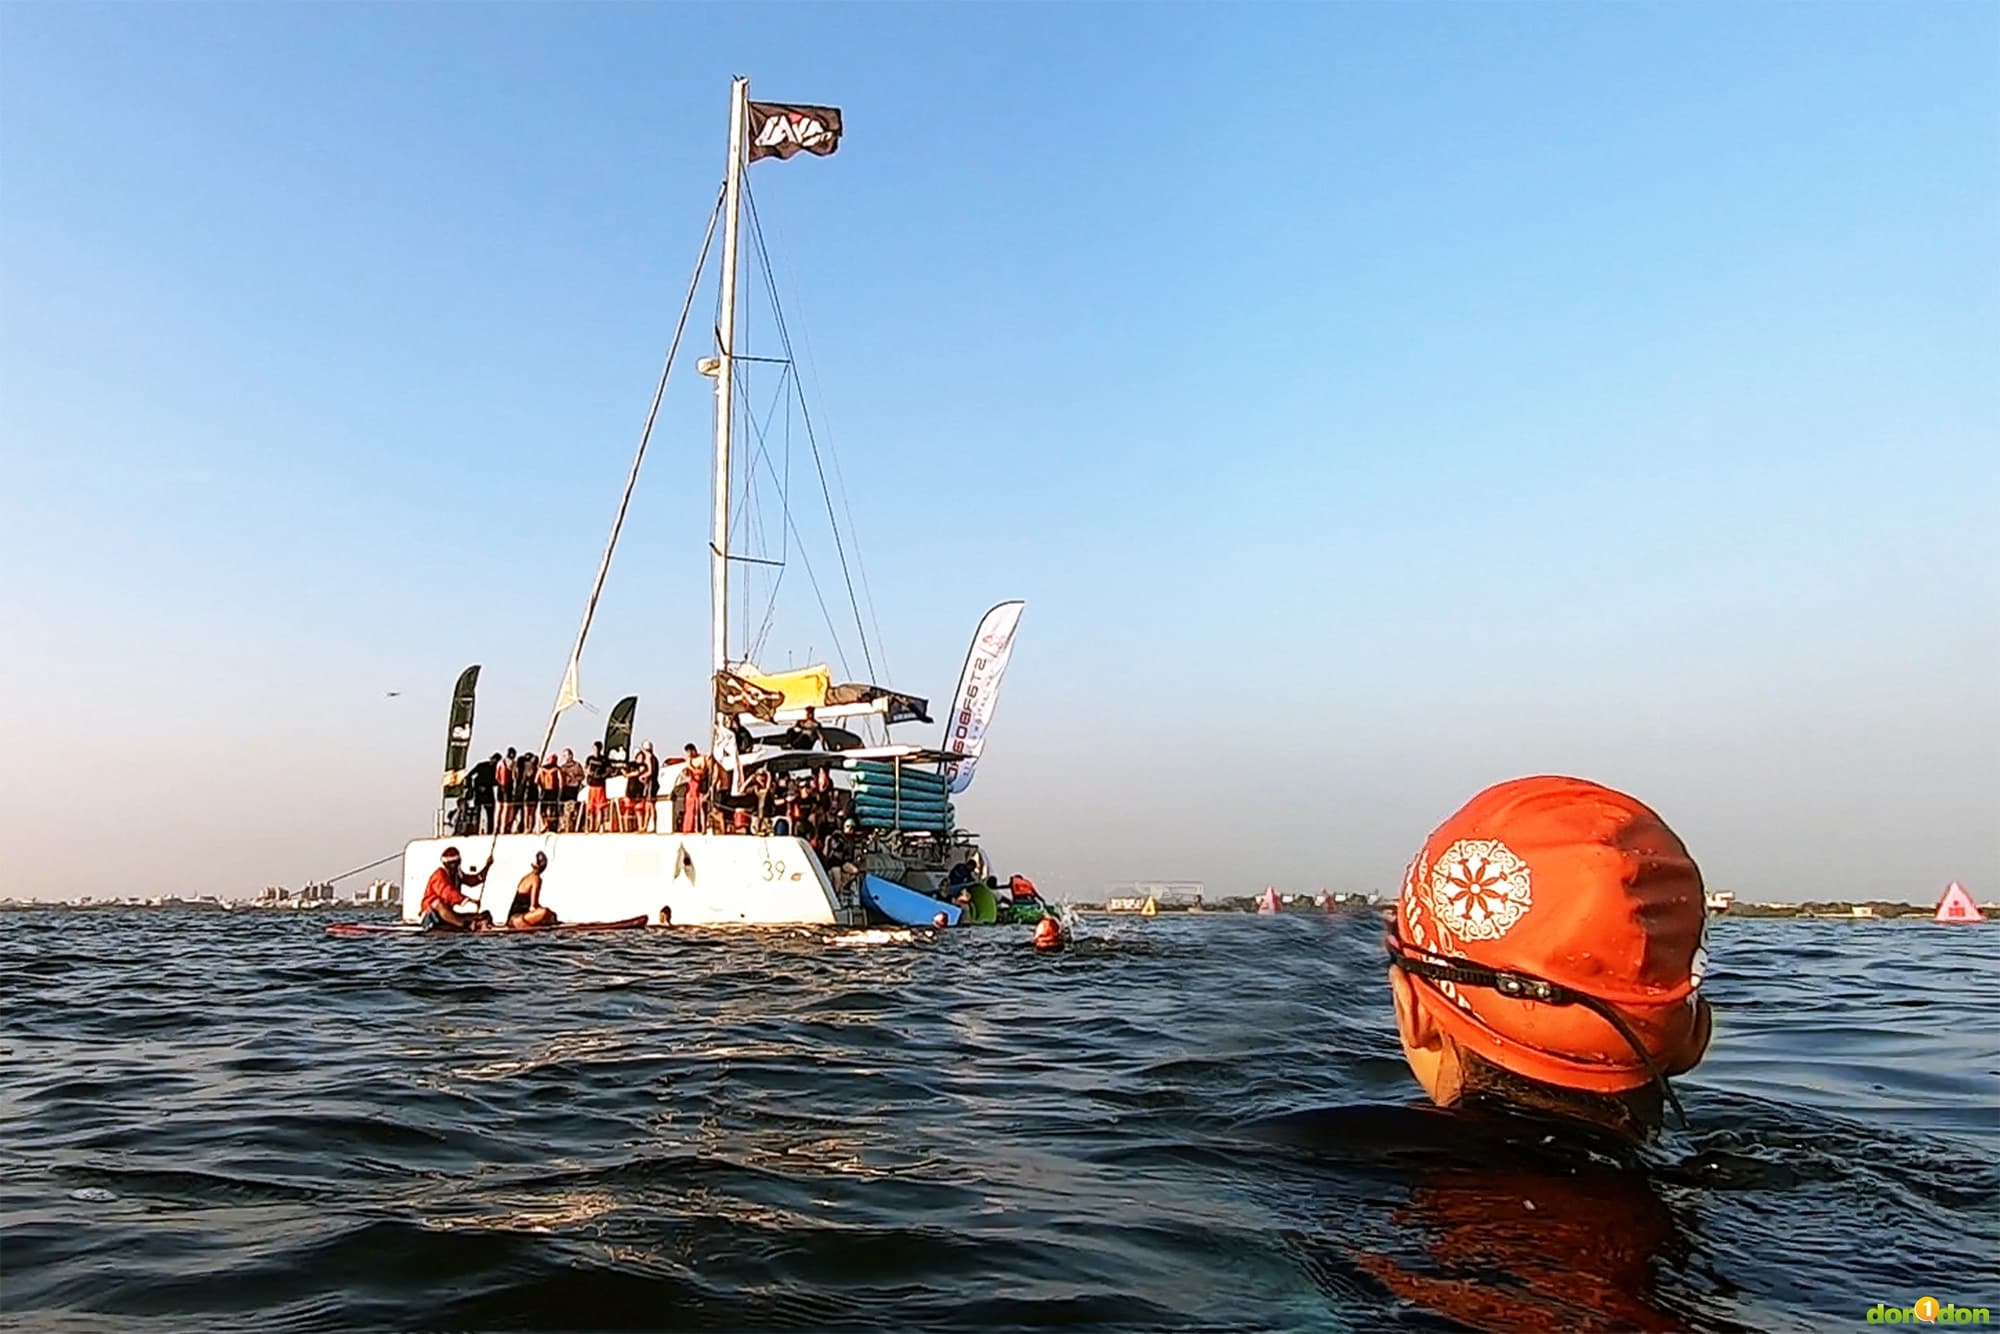 主辦單位也效法 IRONMAN 世界錦標賽 KONA 的「Coffee Boat（咖啡船）」活動，讓選手試游游泳賽道時，游到帆船上喝一杯咖啡